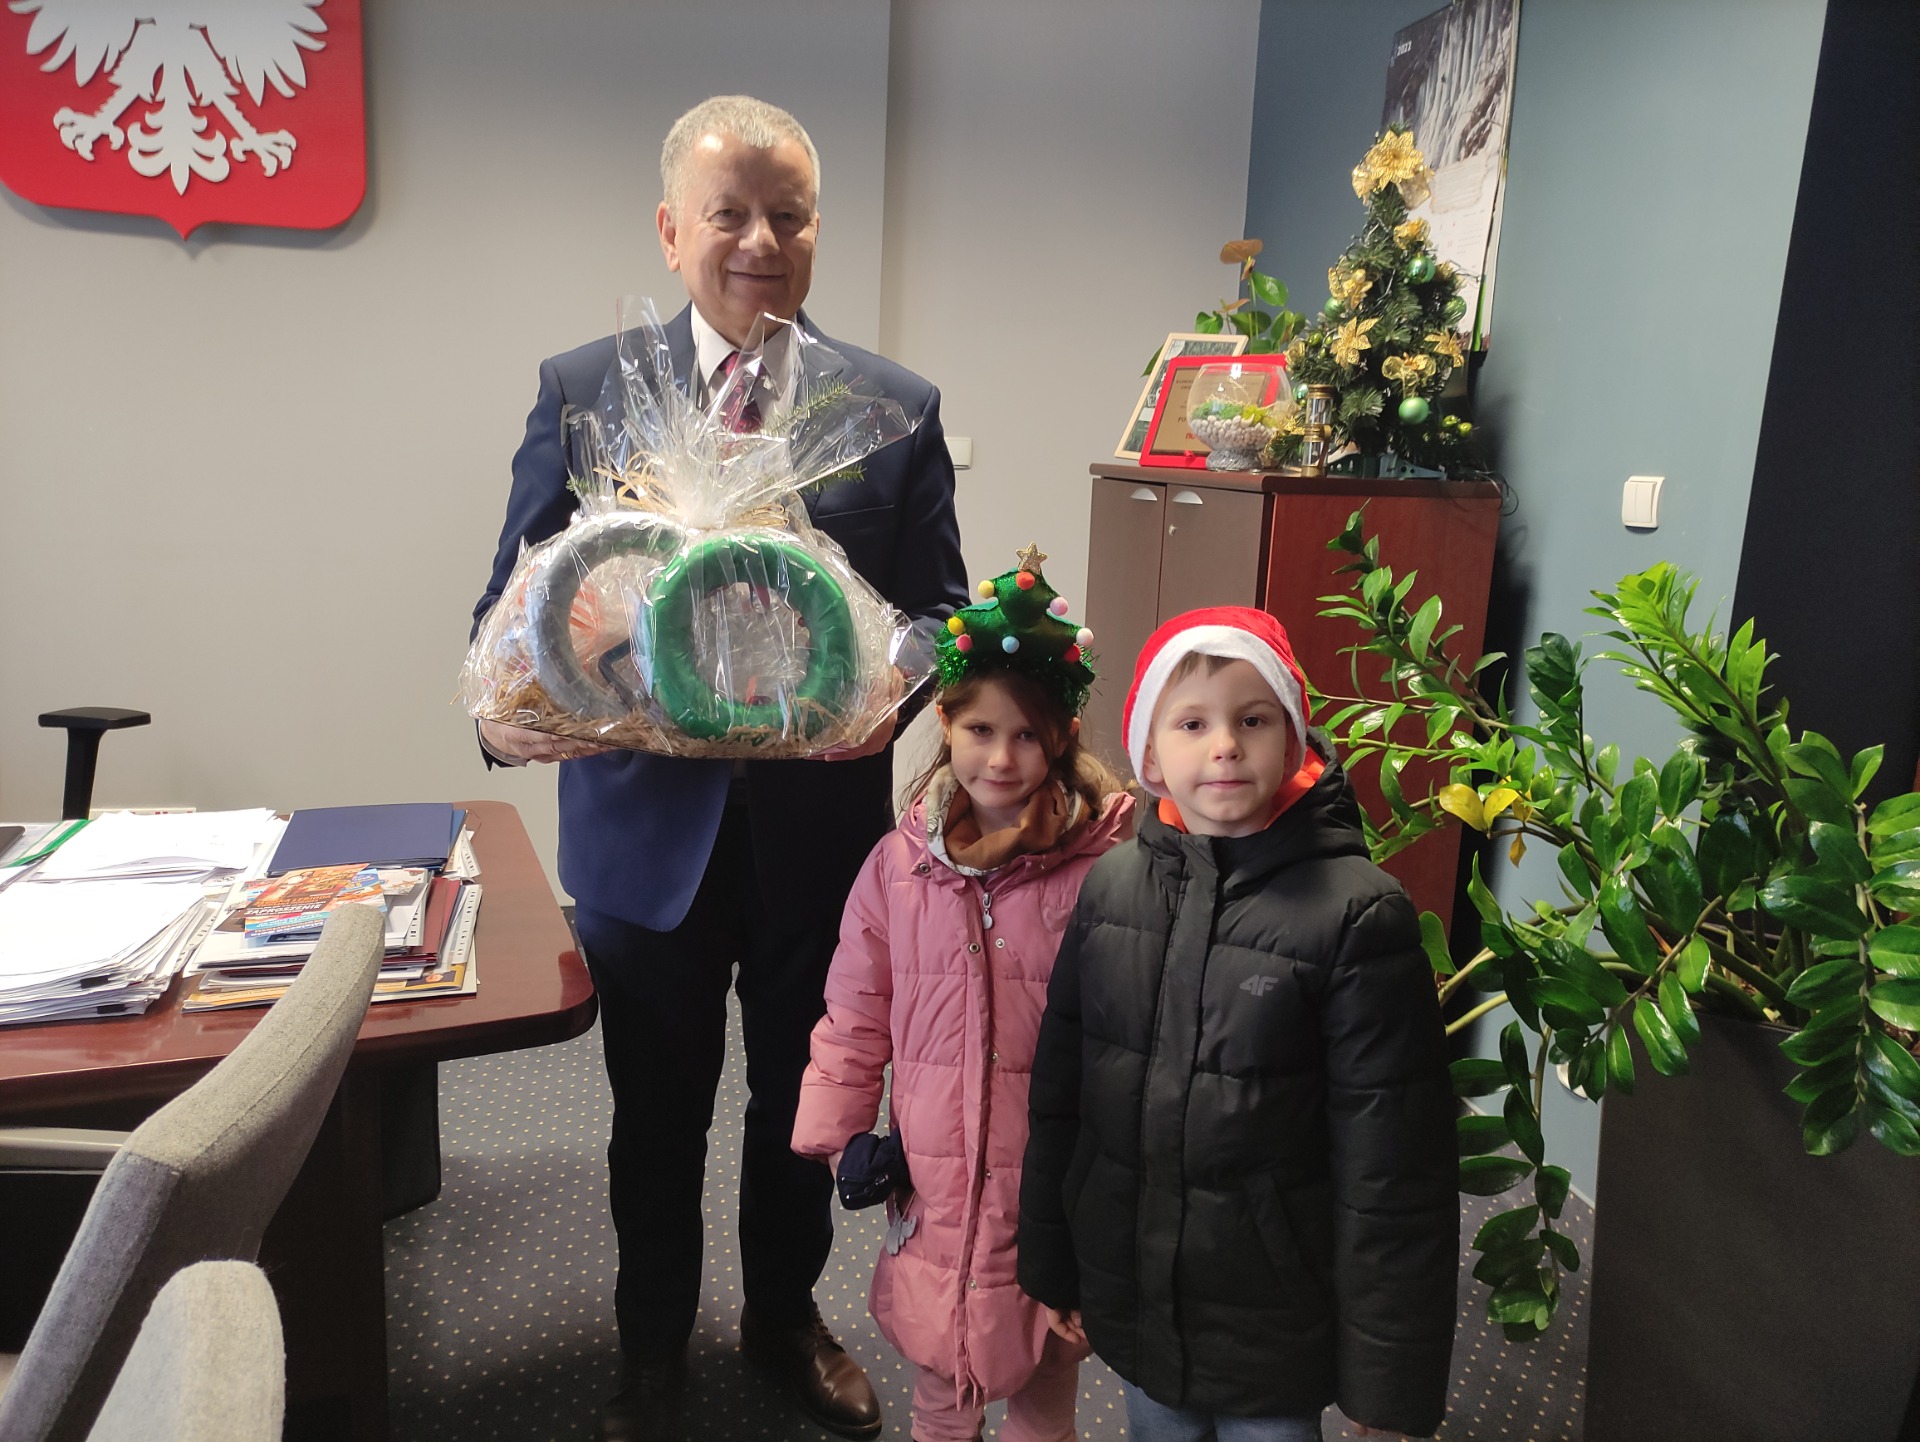 Zdjęcie przedstawia dwójkę dzieci w wieku 5 lat z Starostą 
Powiatu Mieleckiego Stanisławem Lonczakiem. Starosta trzyma w ręku otrzymany prezent od przedszkolaków ozdoby Bożonarodzeniowe wykonane podczas warsztatów z rodzicami.